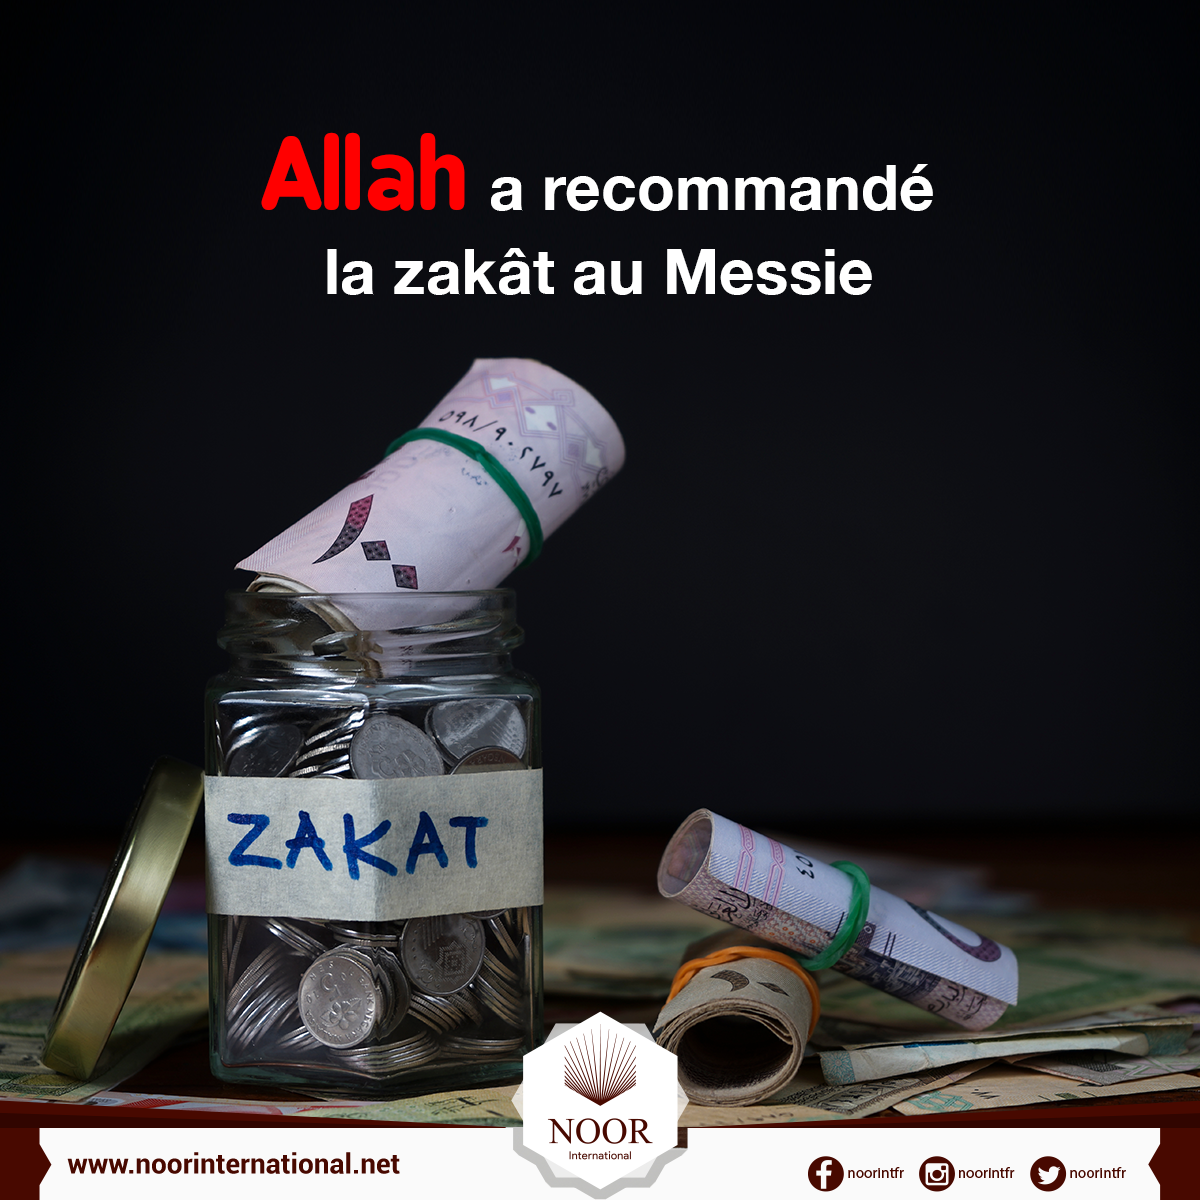 Allah a recommandé la zakât au Messie